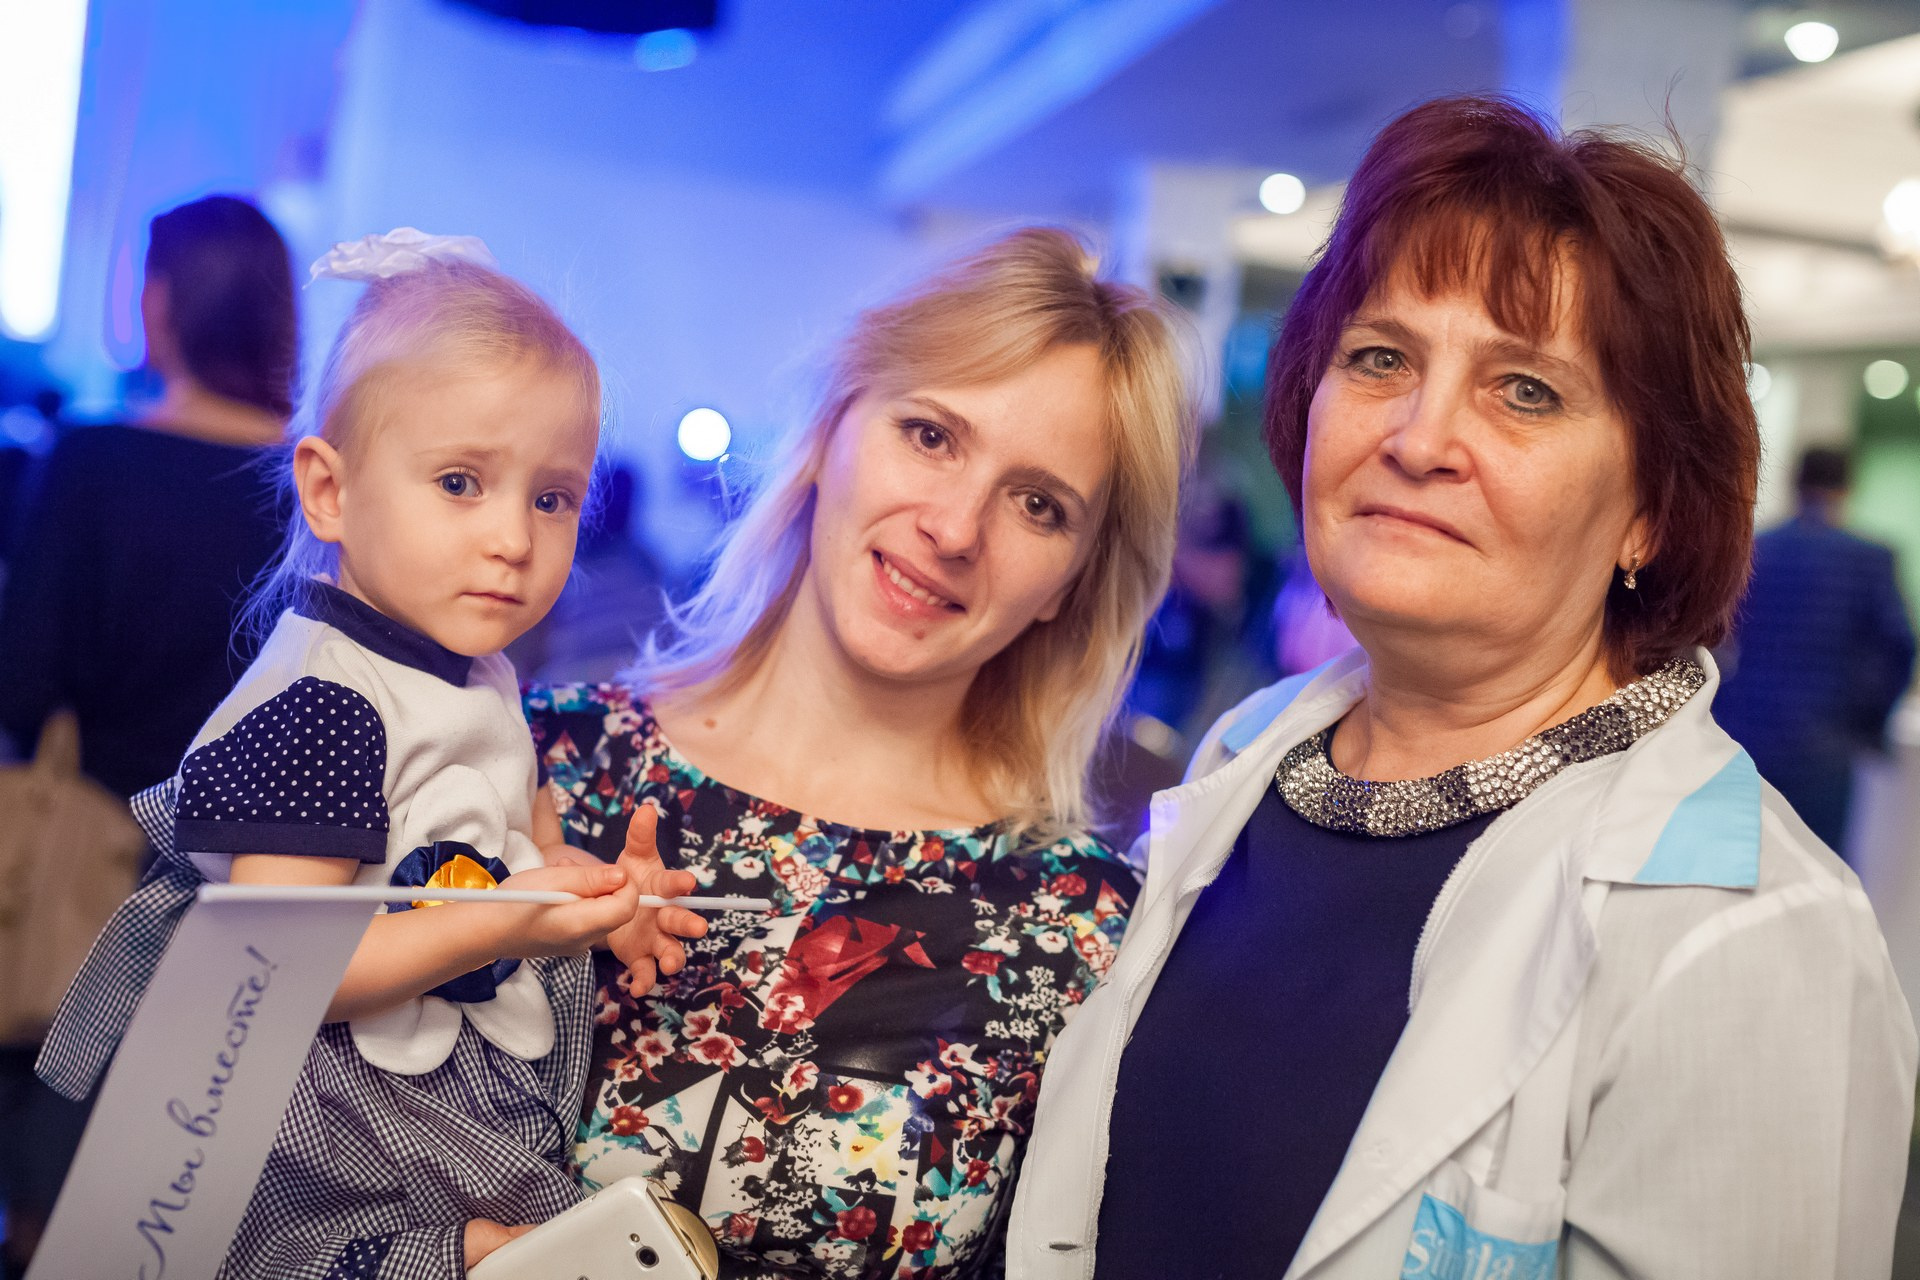 Оксану Альмухаметову Юлия Ярославцева считает первой мамой своей дочери, ведь именно она в первые месяцы жизни смогла сохранить здоровье малышке